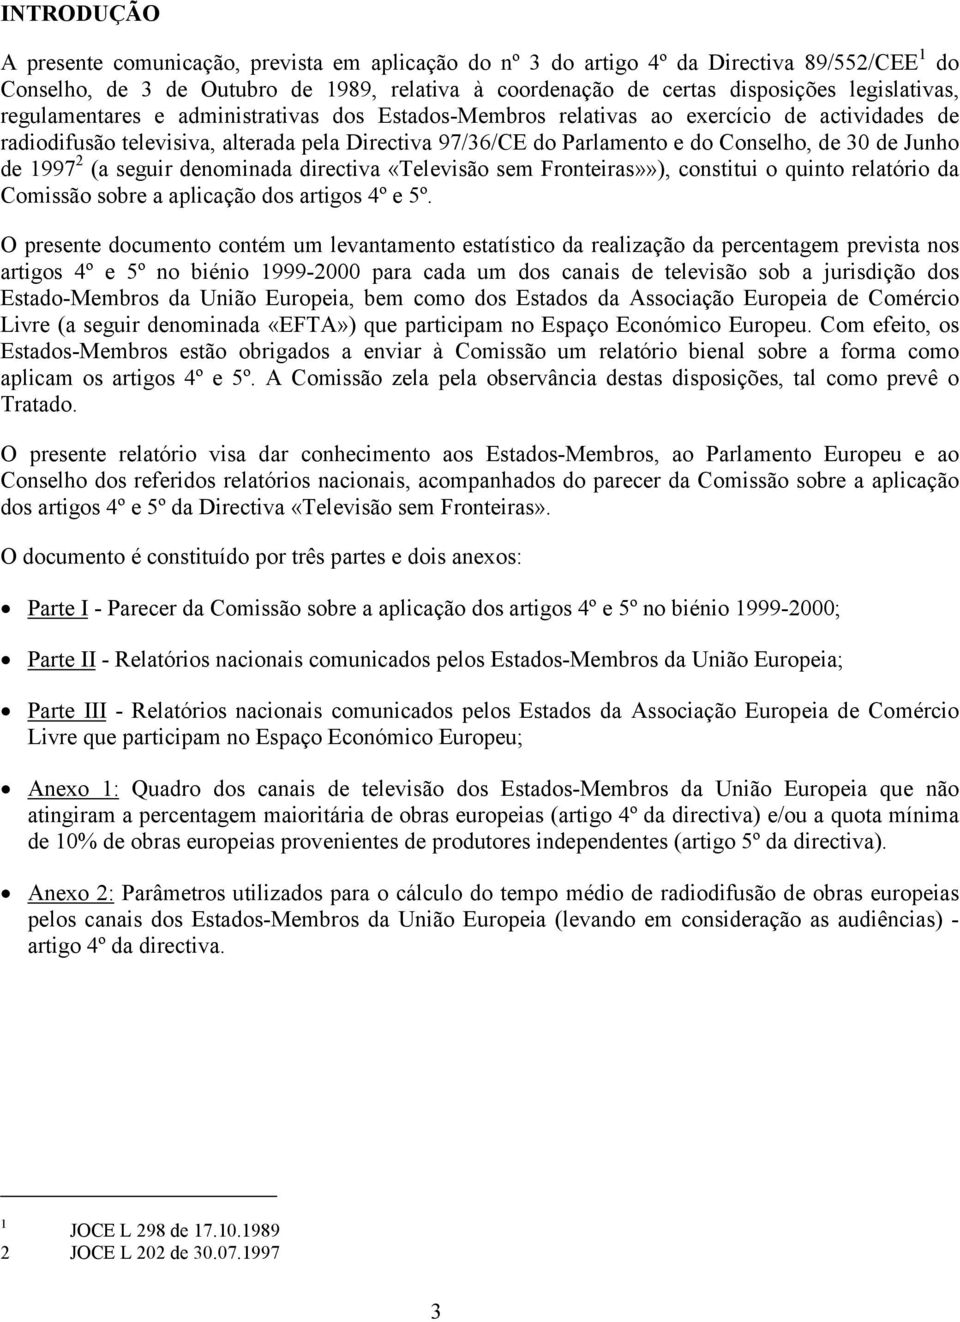 30 de Junho de 1997 2 (a seguir denominada directiva «Televisão sem Fronteiras»»), constitui o quinto relatório da Comissão sobre a aplicação dos artigos 4º e 5º.